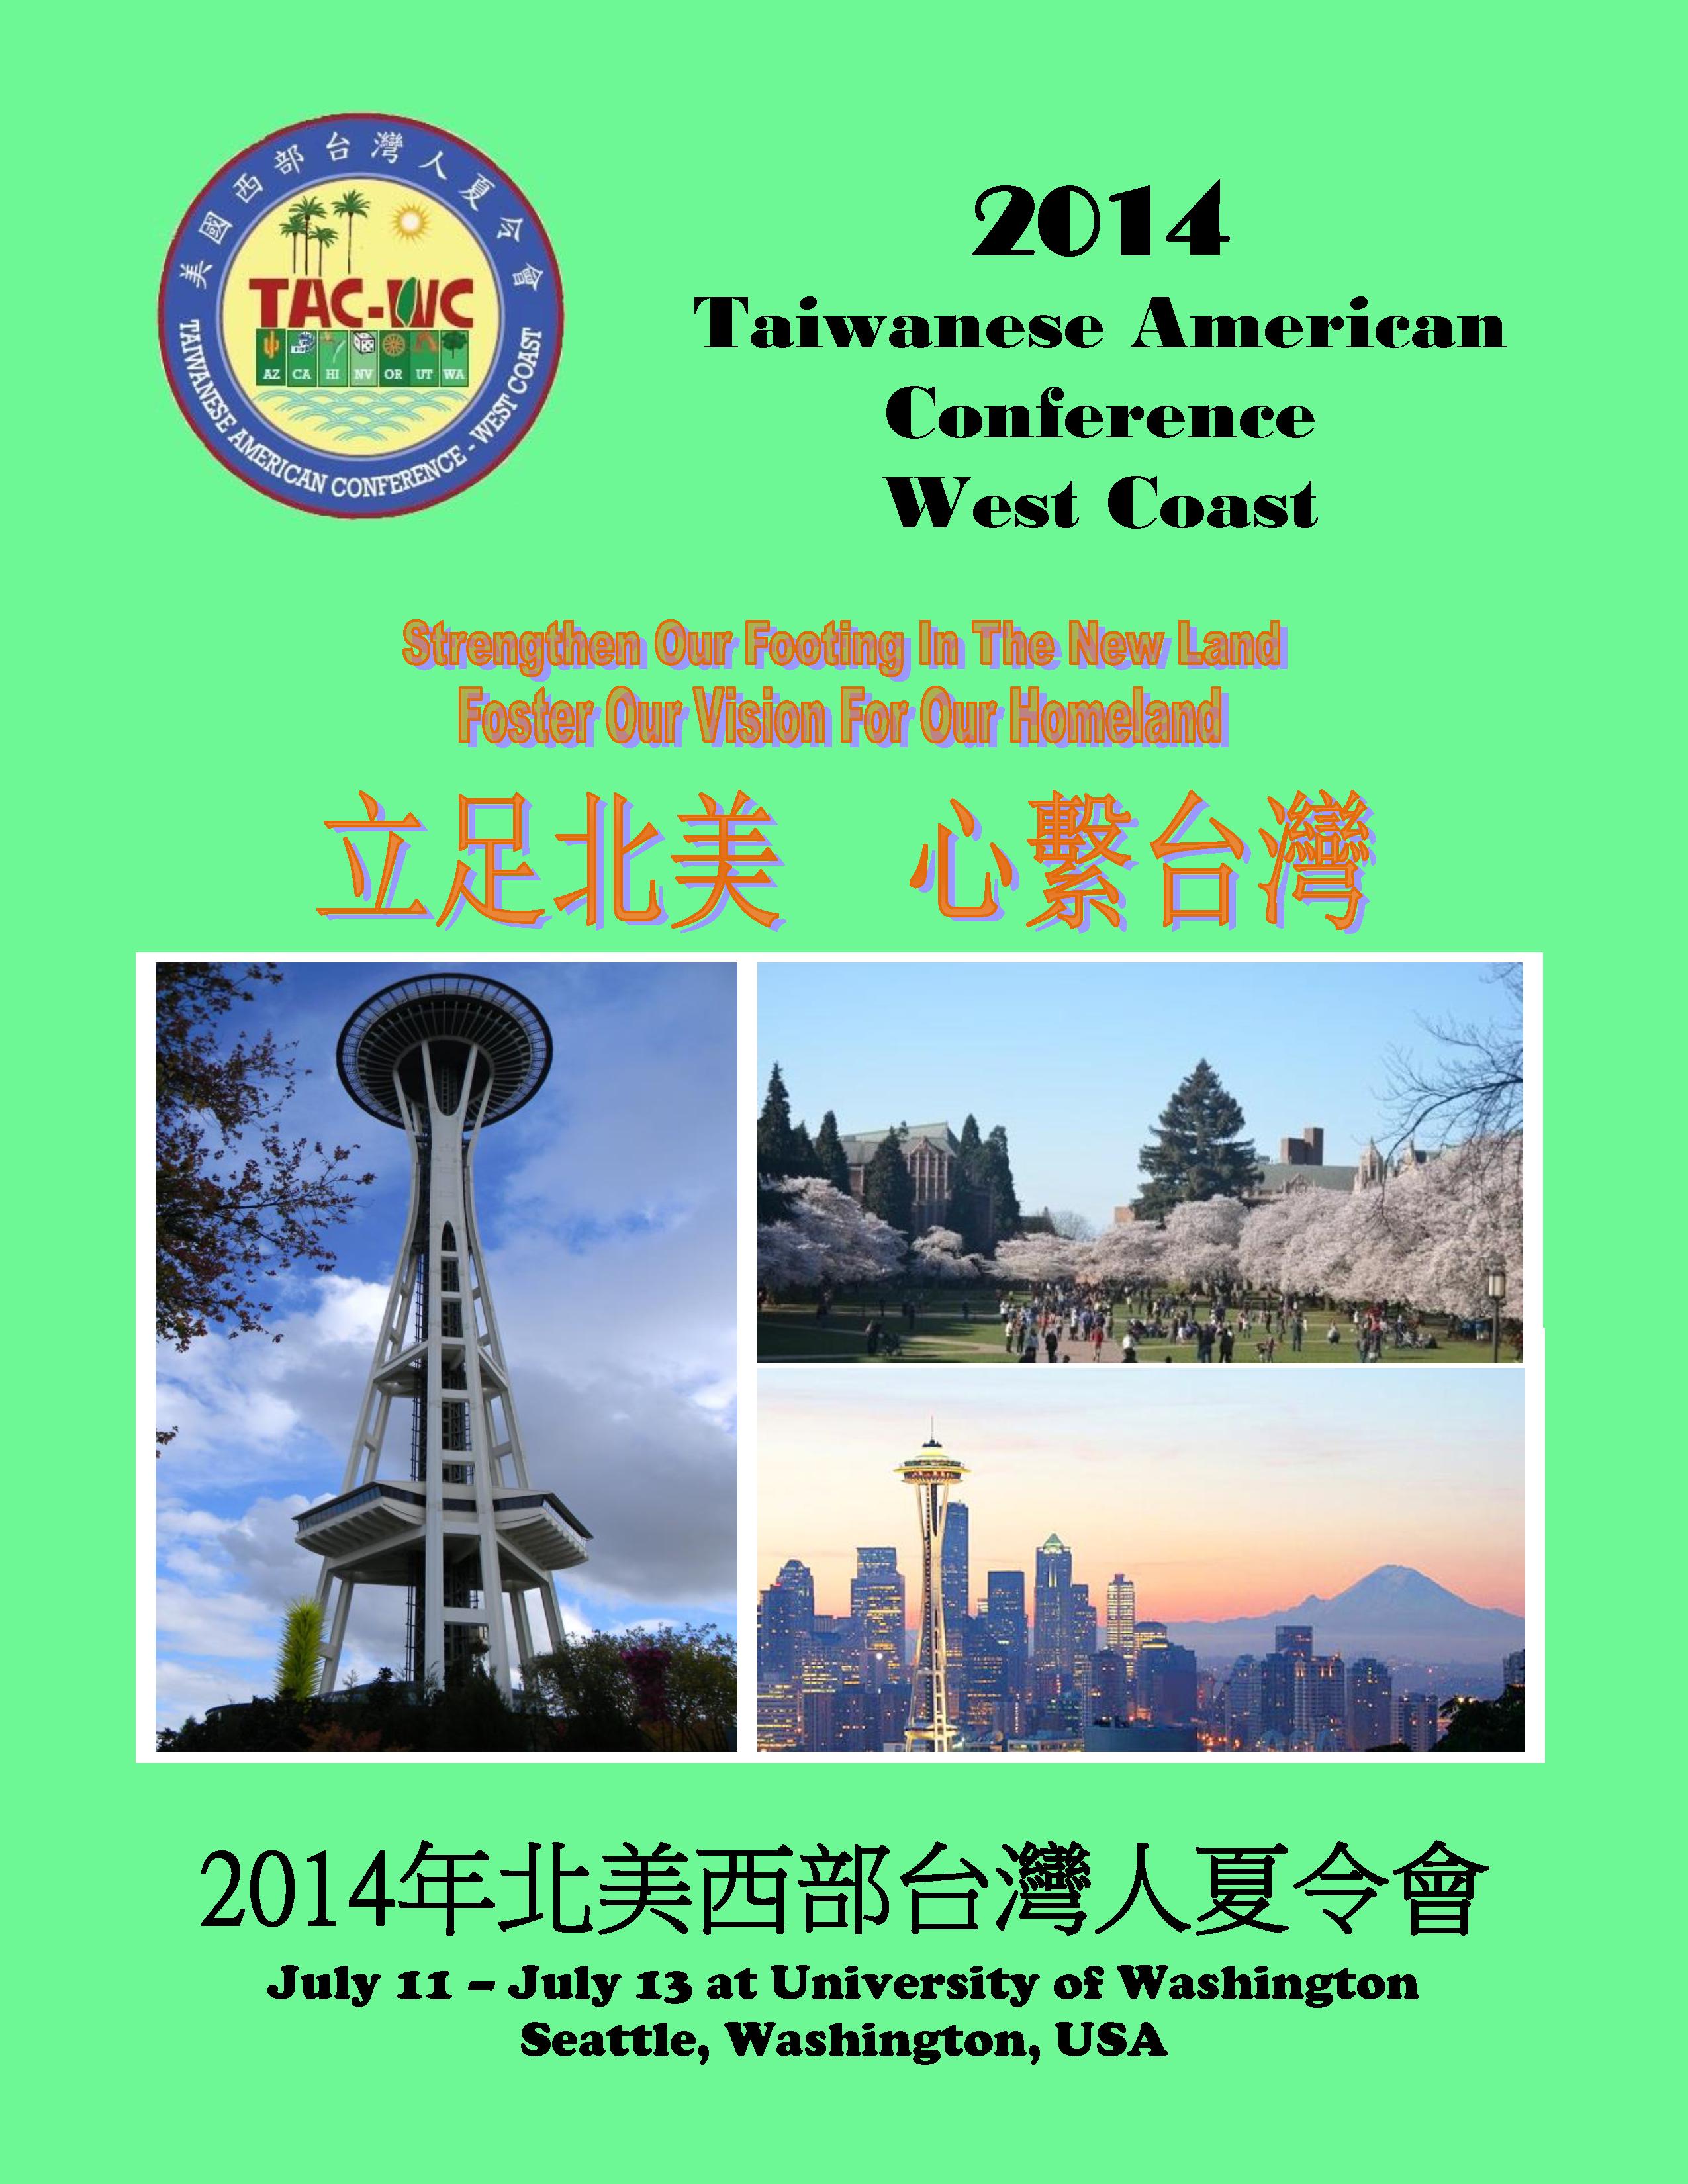 TACWC 2014